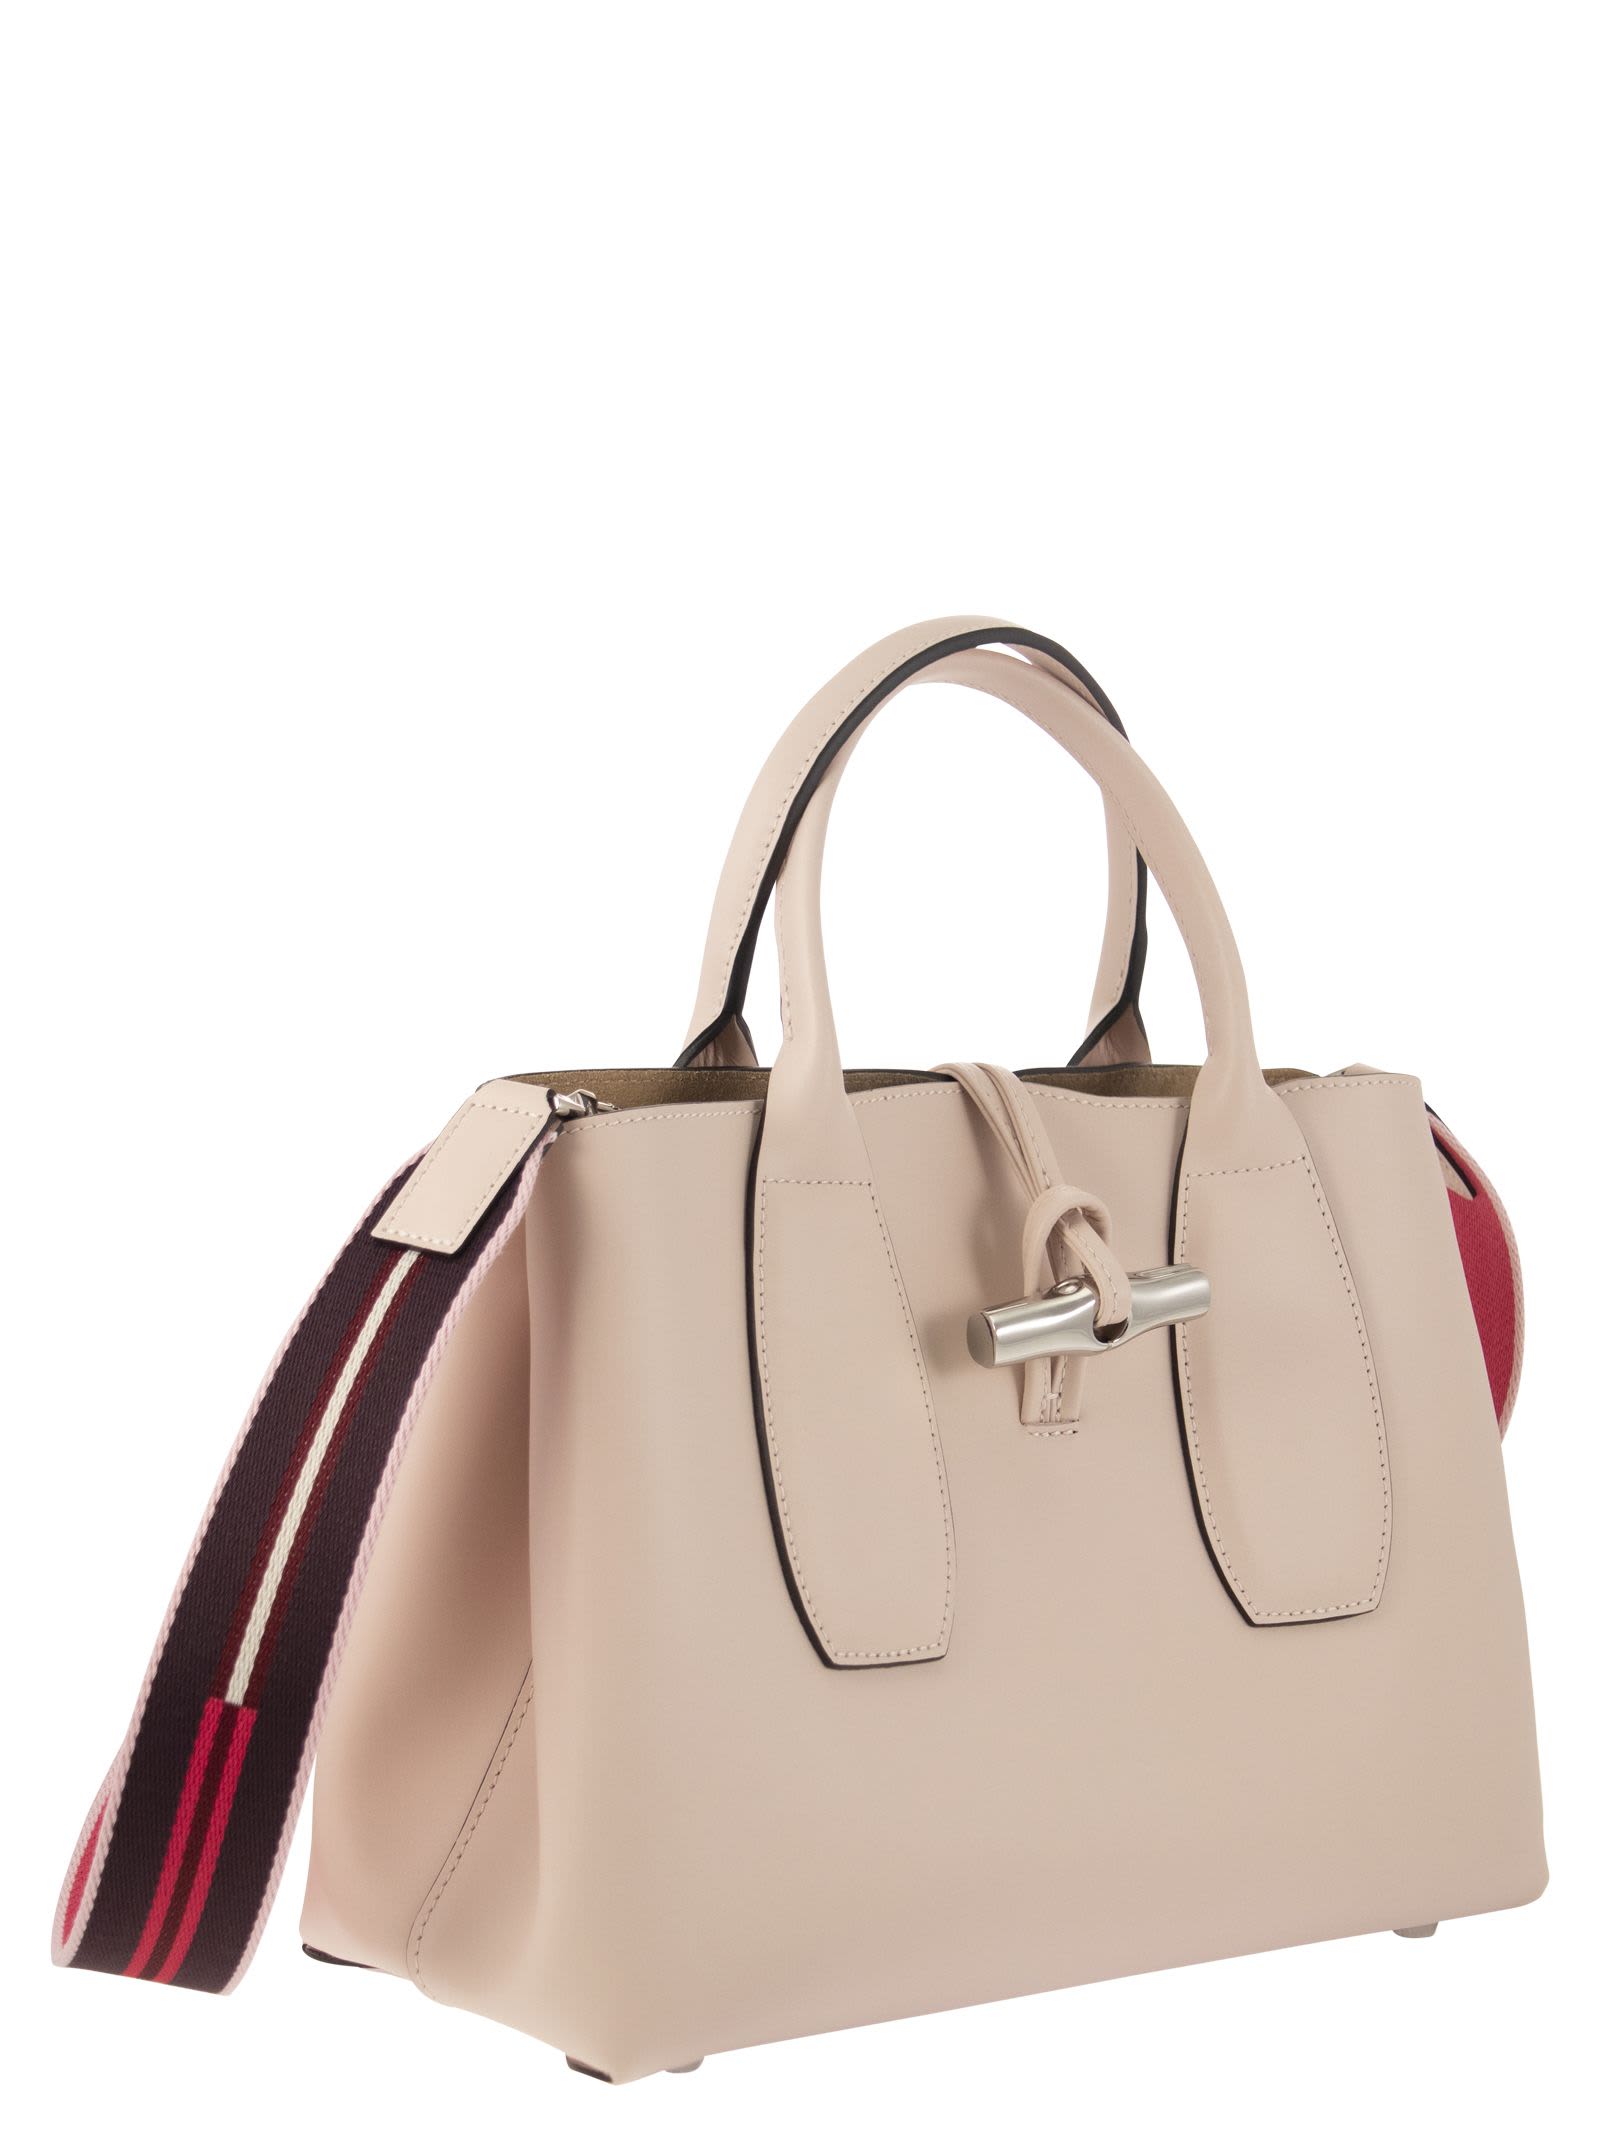 Longchamp Roseau Medium Top Handle Bag In Pink